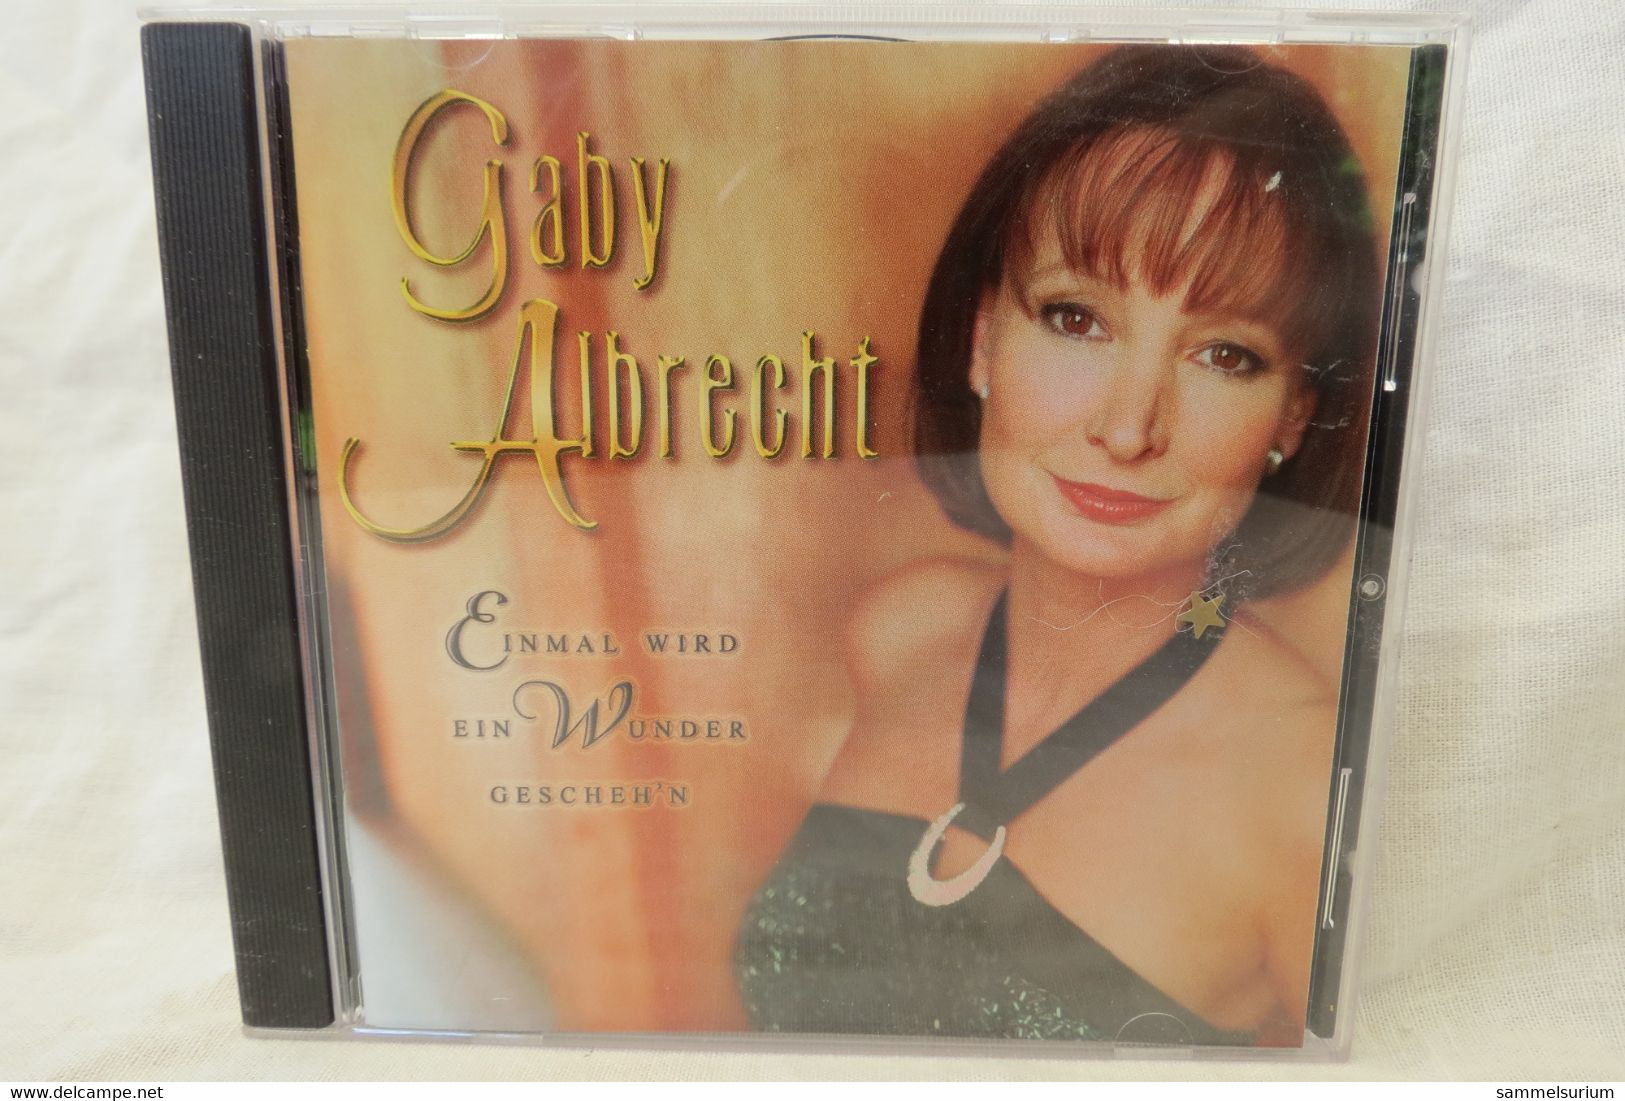 CD Gaby Albrecht "Einmal Wird Ein Wkunder Gescheh'n" - Sonstige - Deutsche Musik